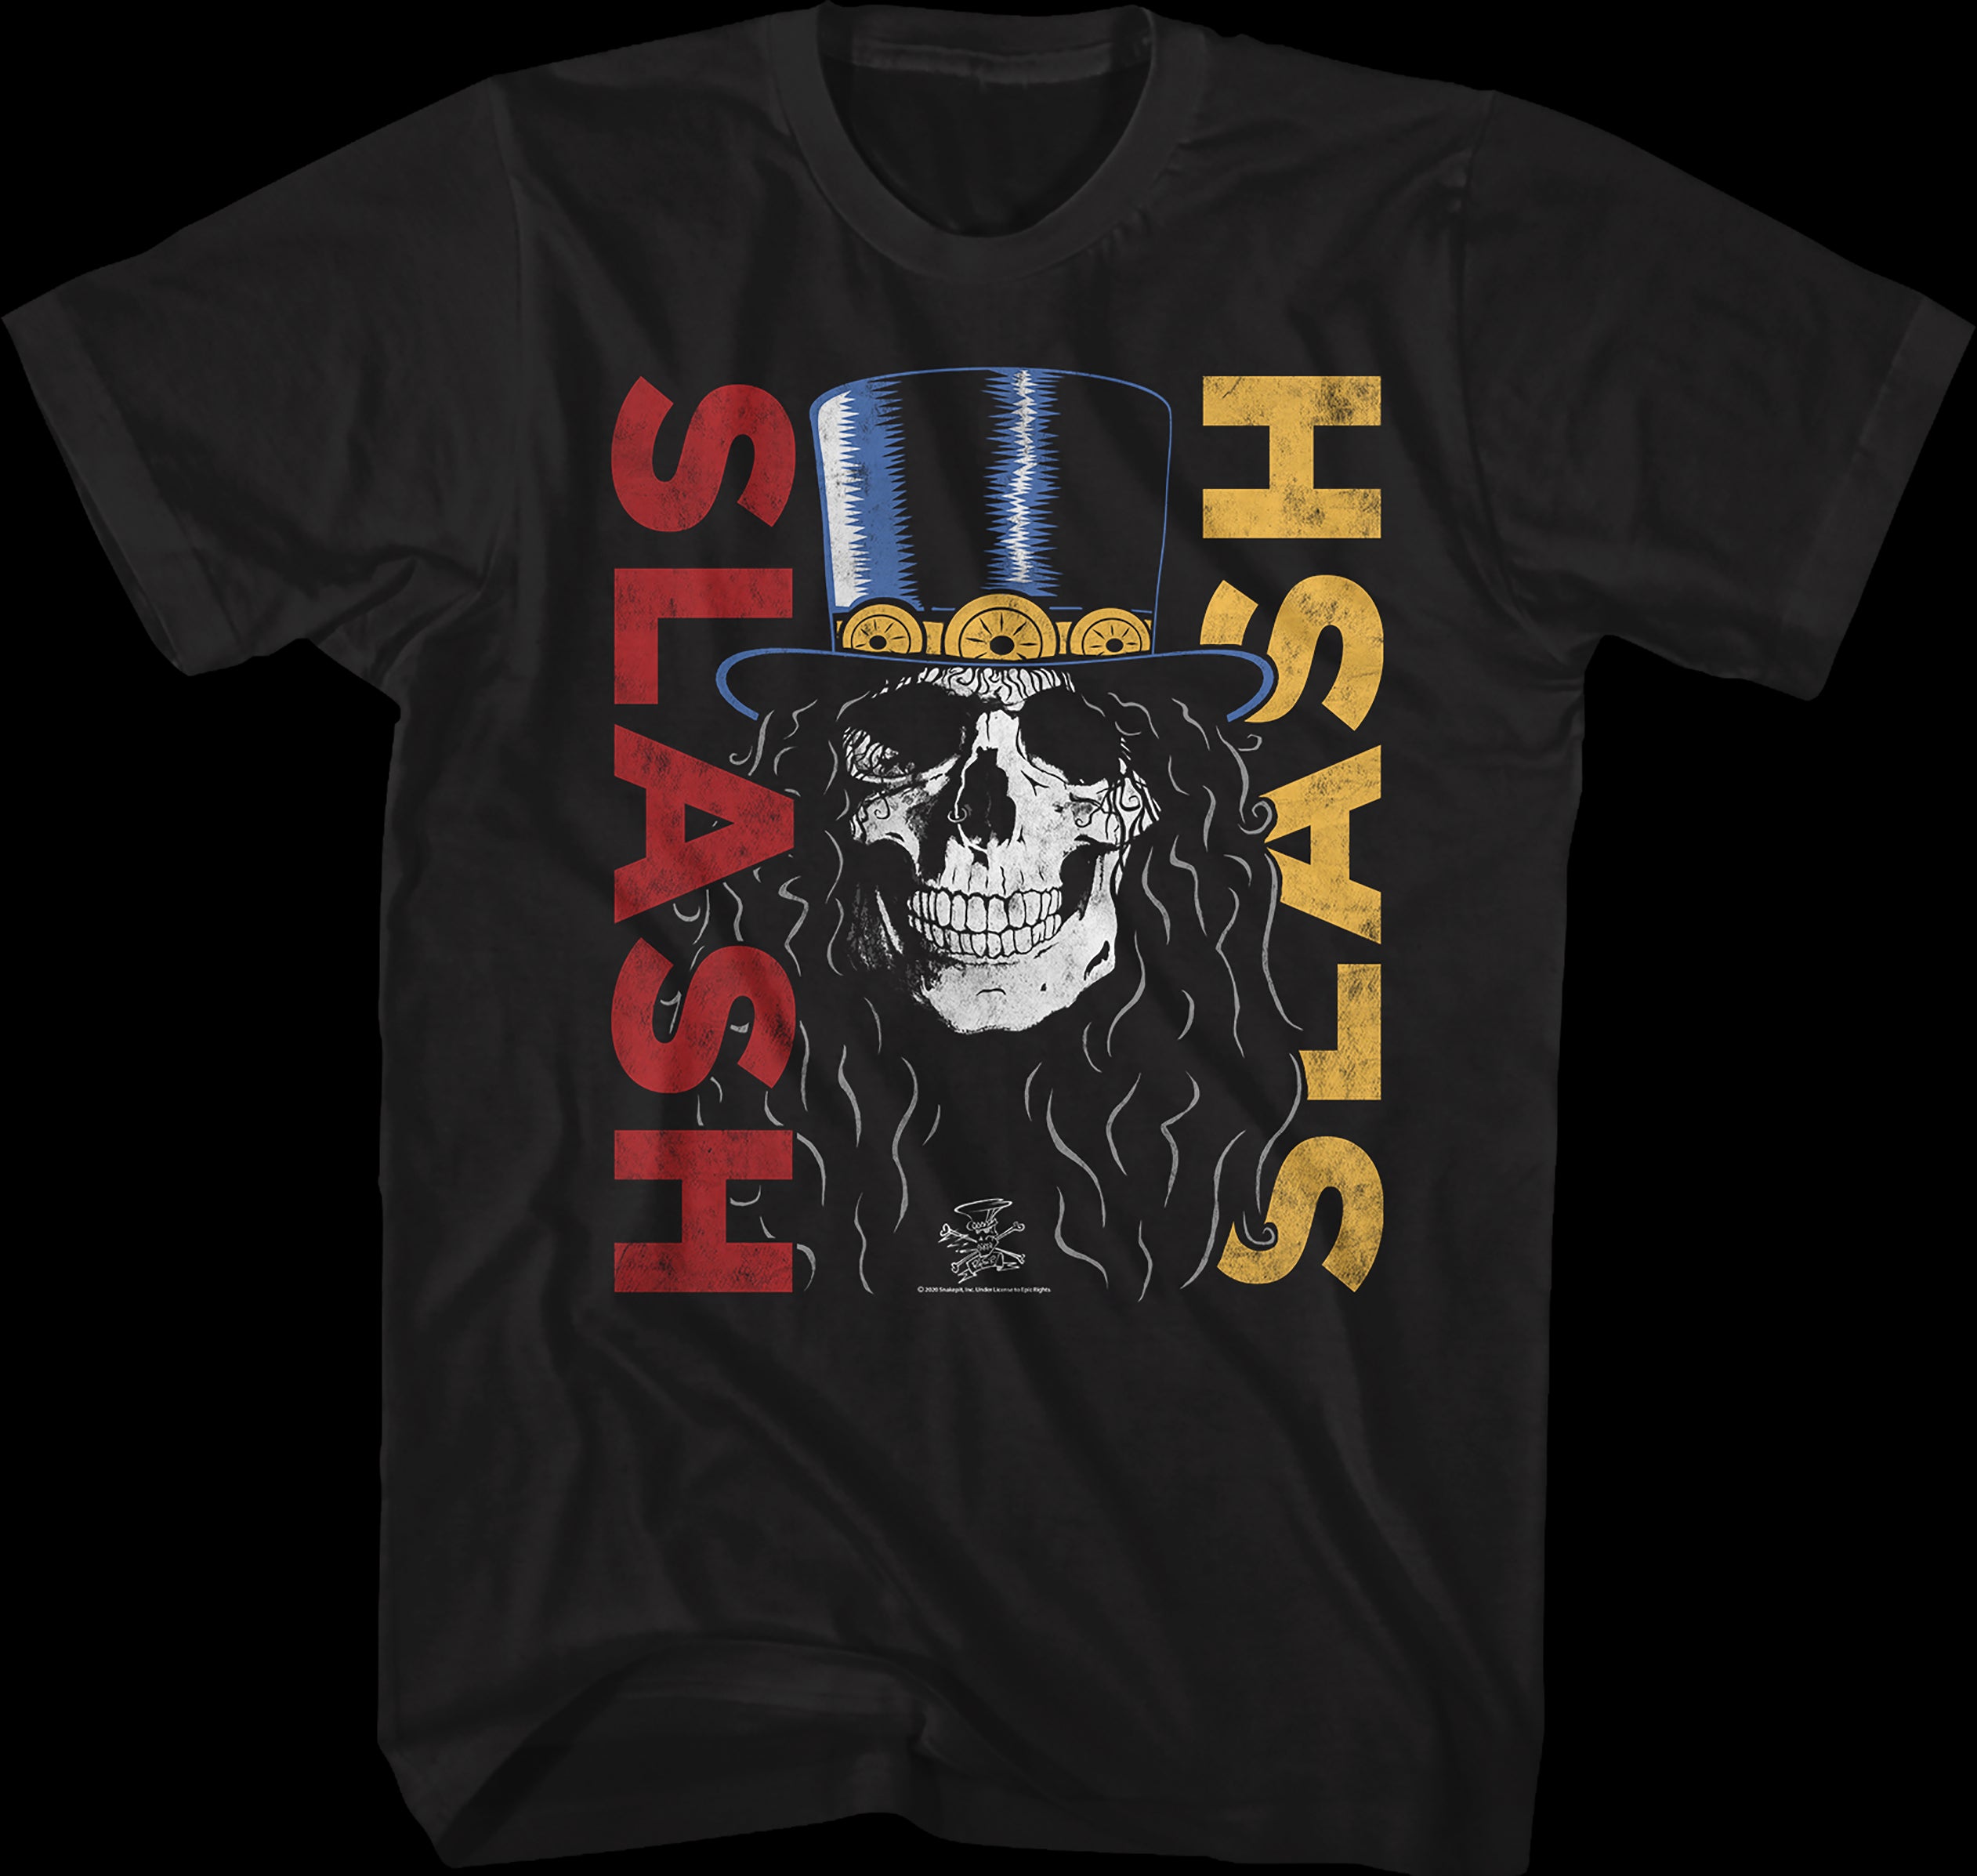 Slash - Top Hat Apocalyptic Love Tour T-Shirt 